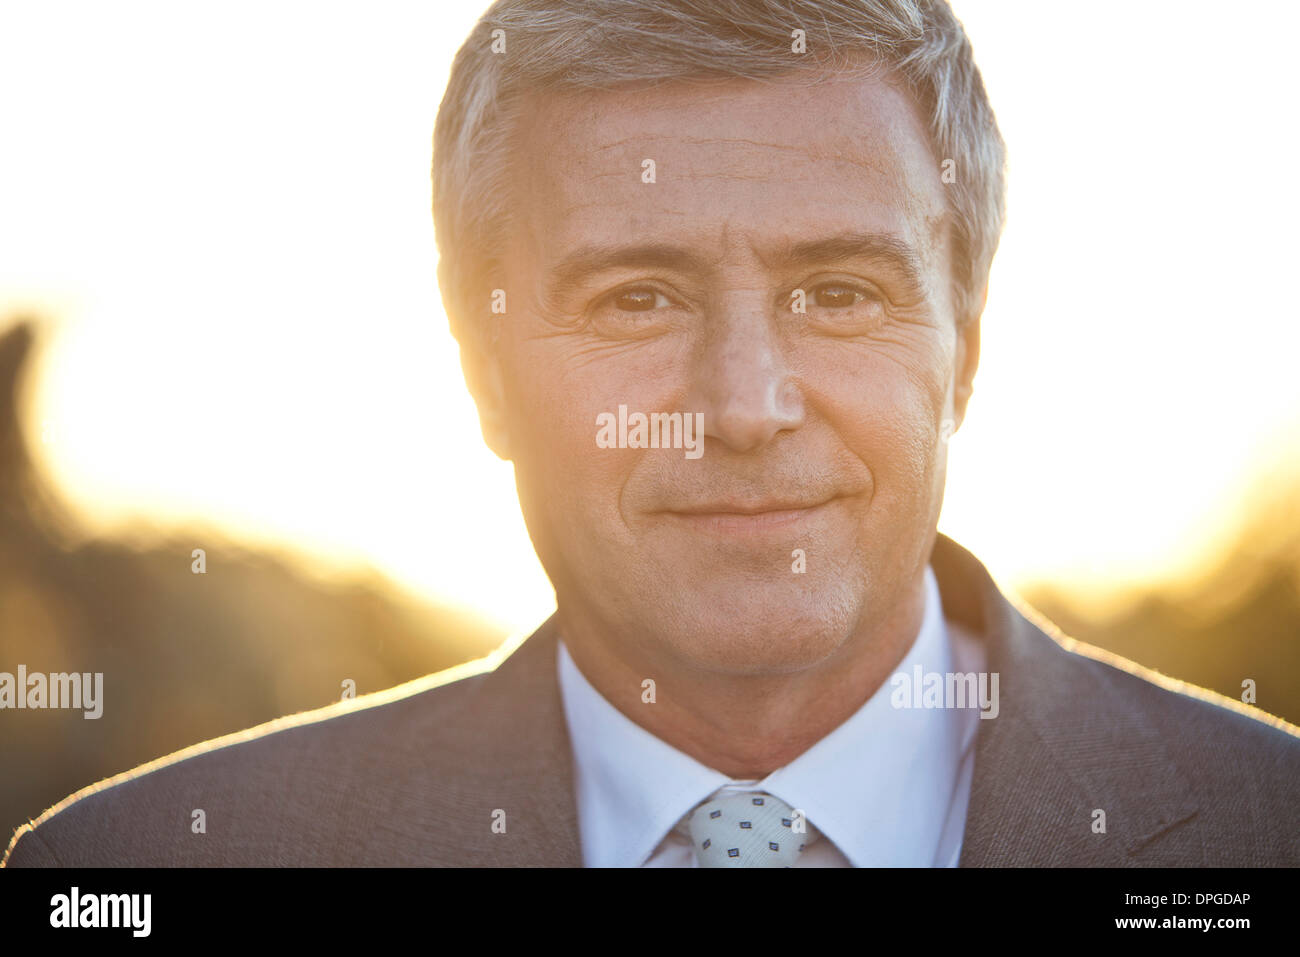 Mature business executive, backlit, portrait Stock Photo